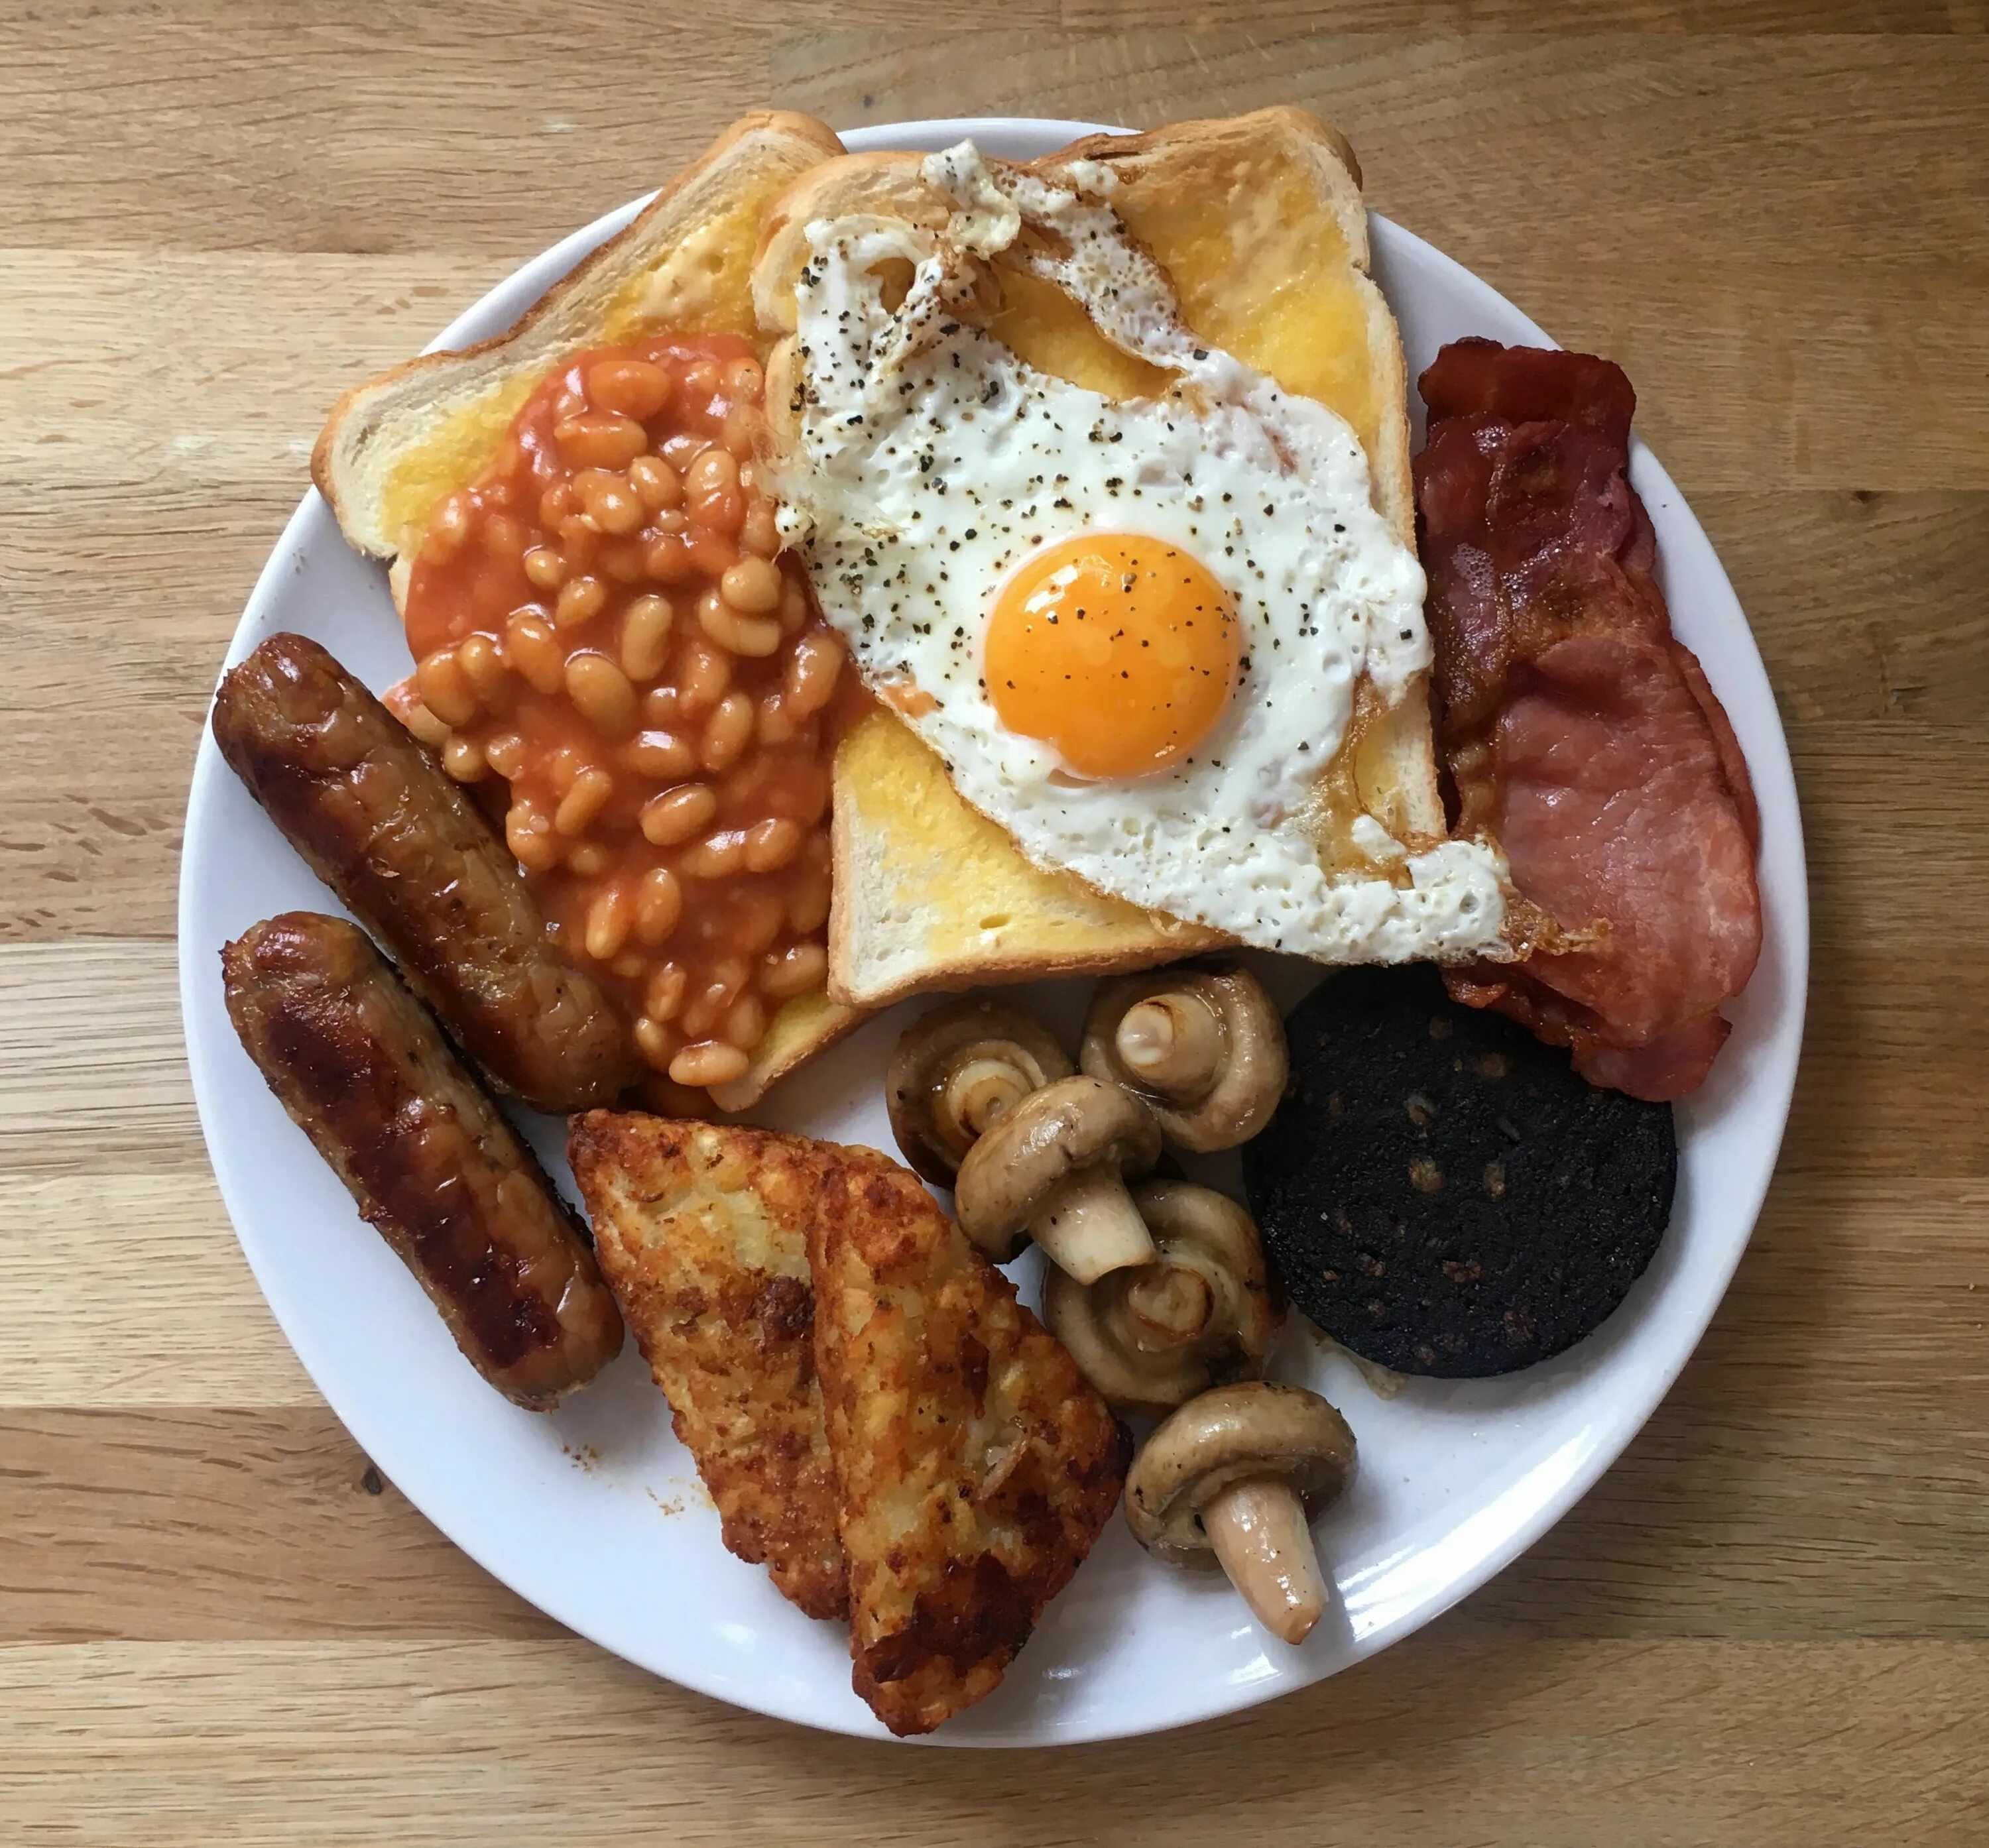 Купить английский завтрак. Английский завтрак. Британский завтрак. Традиционный британский завтрак. Полный английский завтрак.